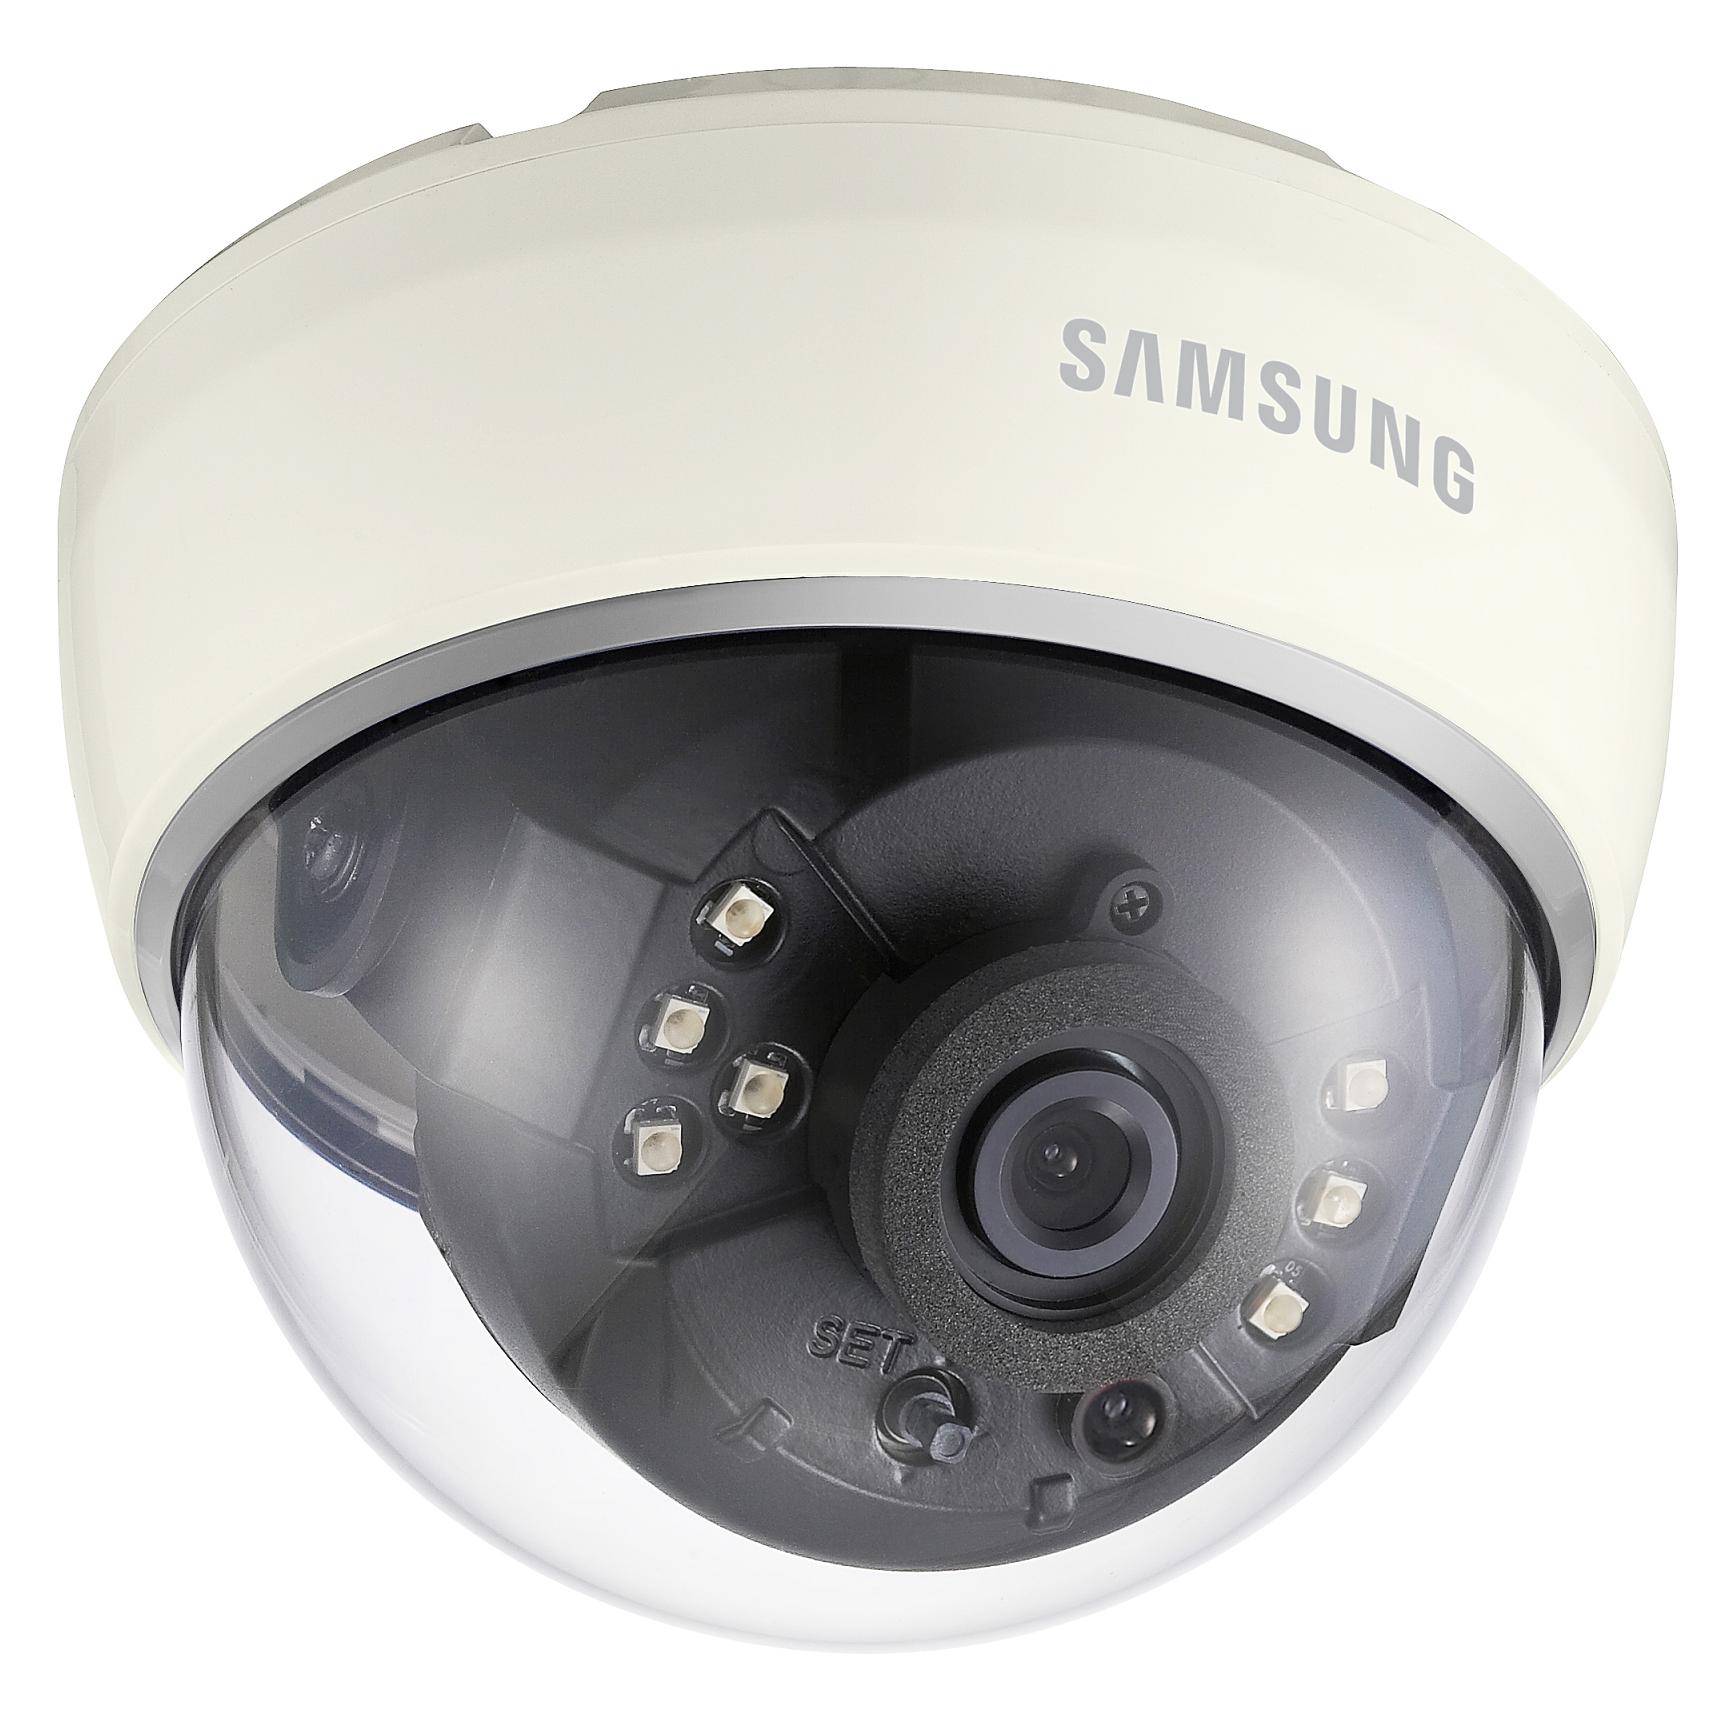 Купить круговую камеру. Samsung SCD-2020rp. SCD-2080rp цветная купольная видеокамера Samsung. LTV CXB-610 48 камера видеонаблюдения. Камера видеонаблюдения самсунг купольная.